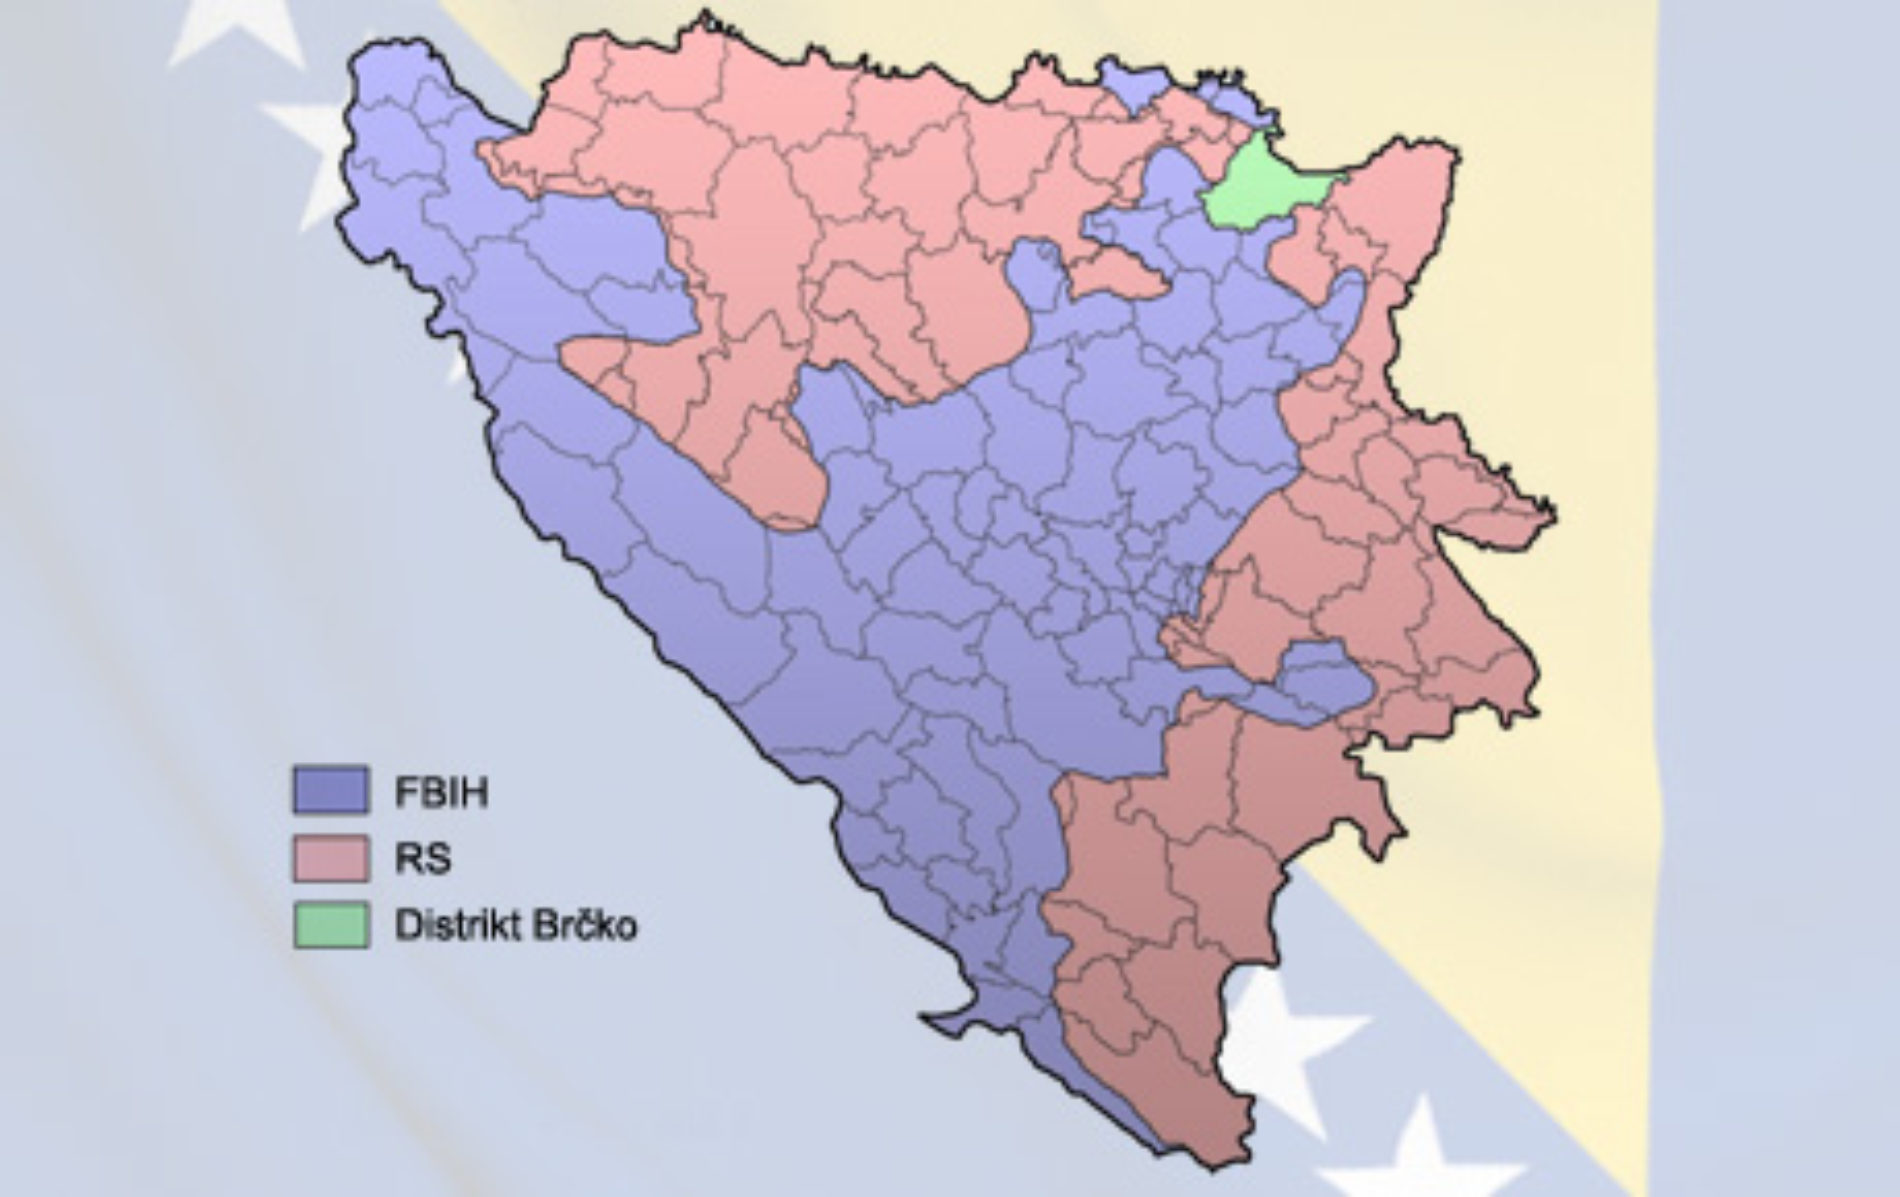 BRČKO: Kamen temeljac države – Referendum o Danu RS-a ne može se održati u Distriktu Brčko